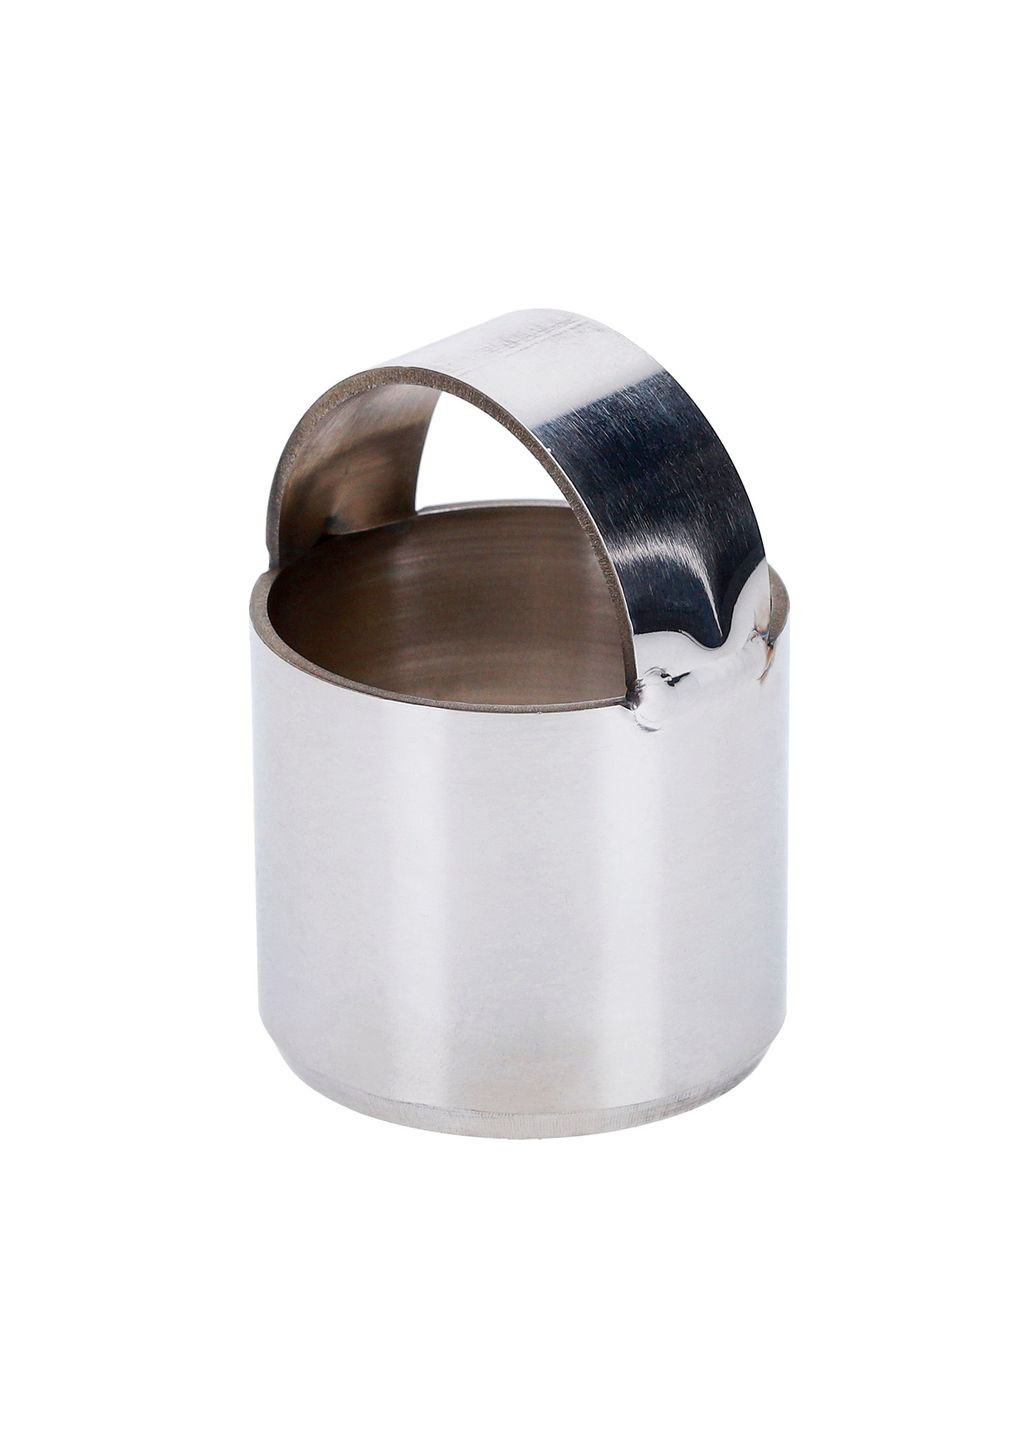 Металлическая форма кольцо с ручкой для вырезки теста (вареников, пельменей, печенья) Ø 4 см Metalworkshop (263931738)